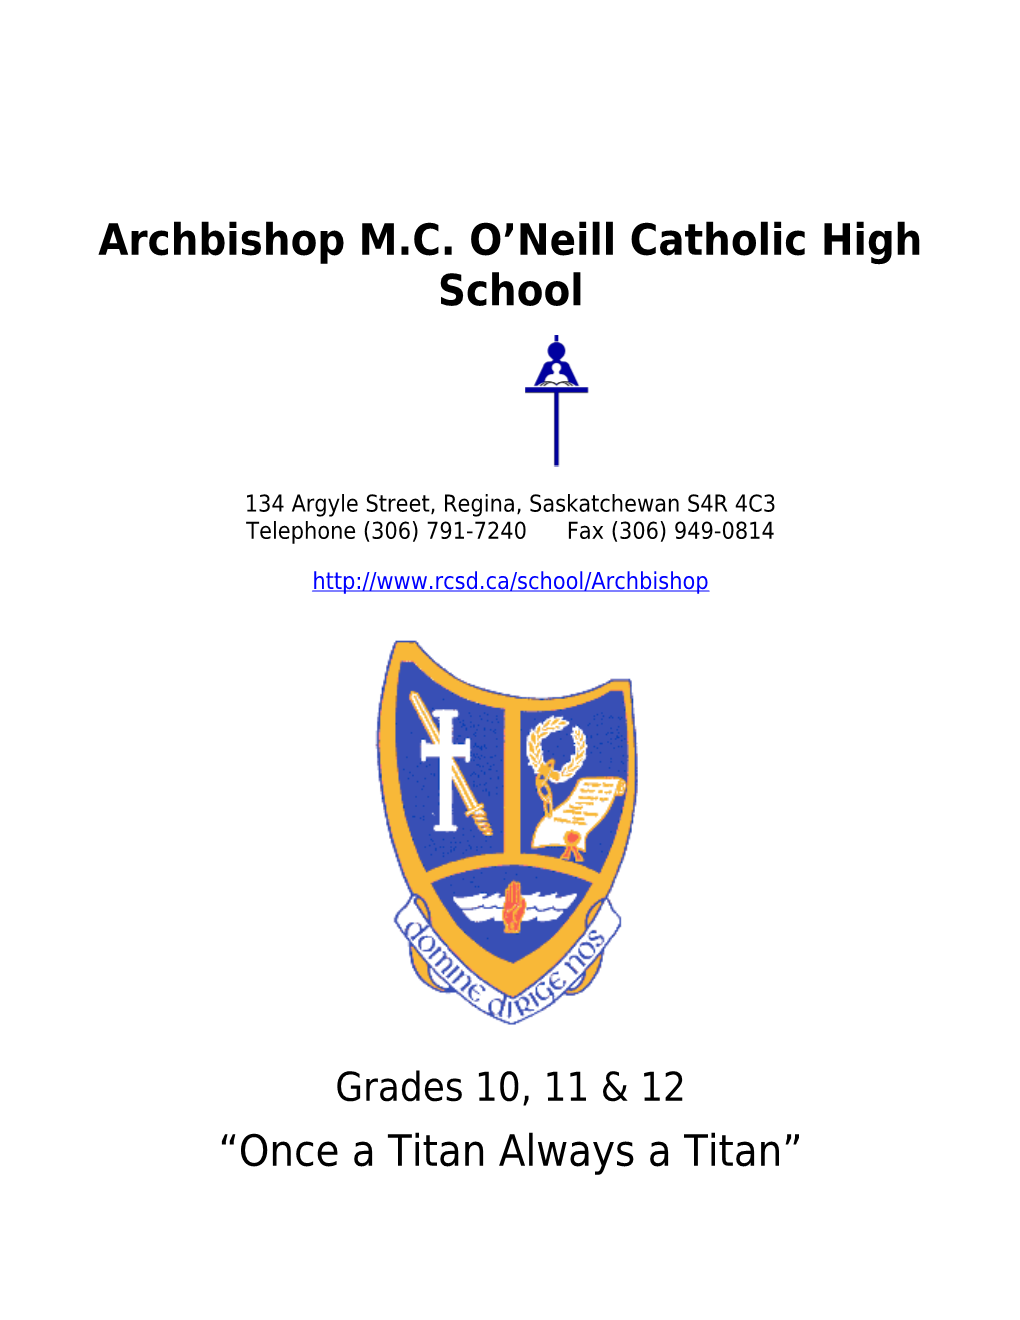 Archbishop M.C. O Neill Catholic High School